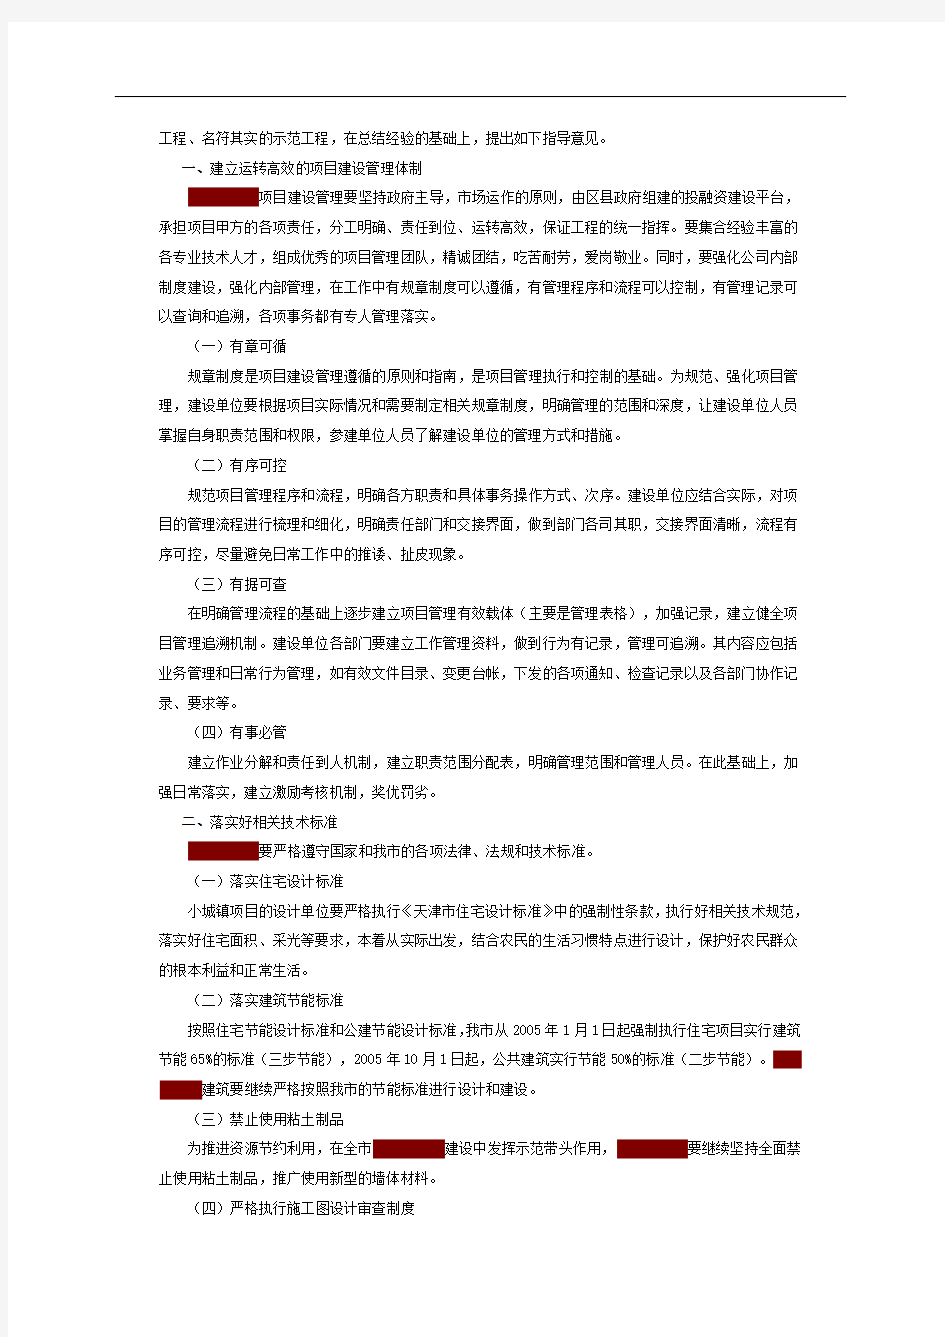 天津市发展和改革委员会印发《关于示范小城镇试点建立规范的项目建设管理体系的指导意见》的通知